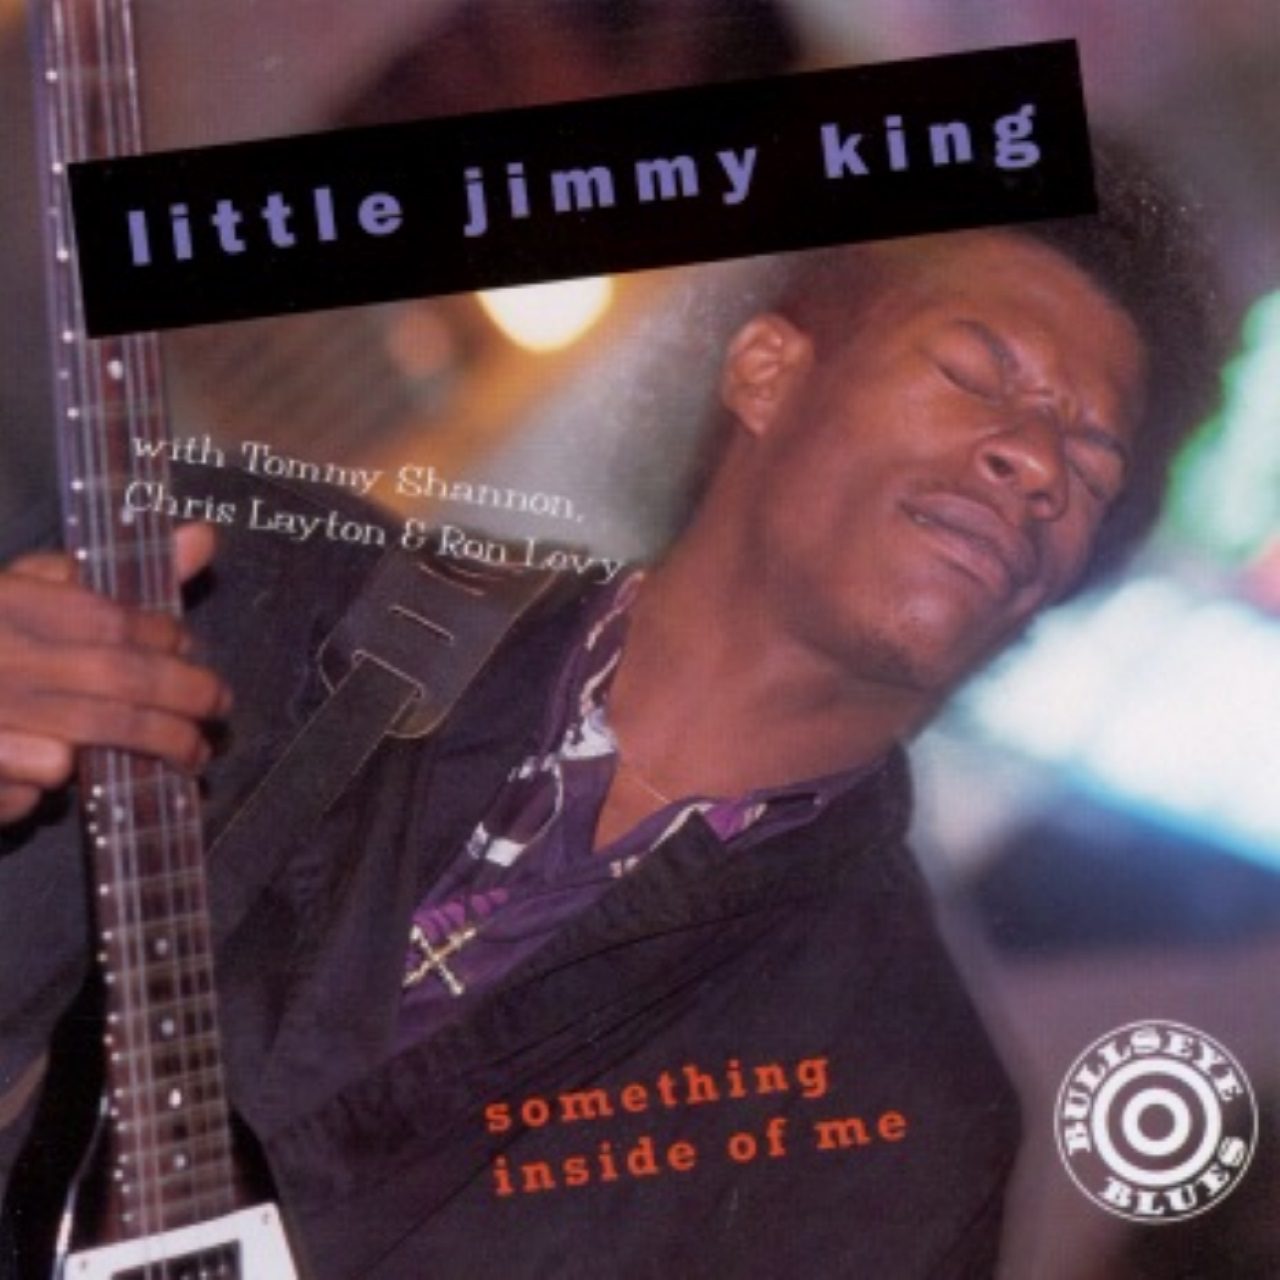 Little Jimmy King – Something Inside Of Me cover album